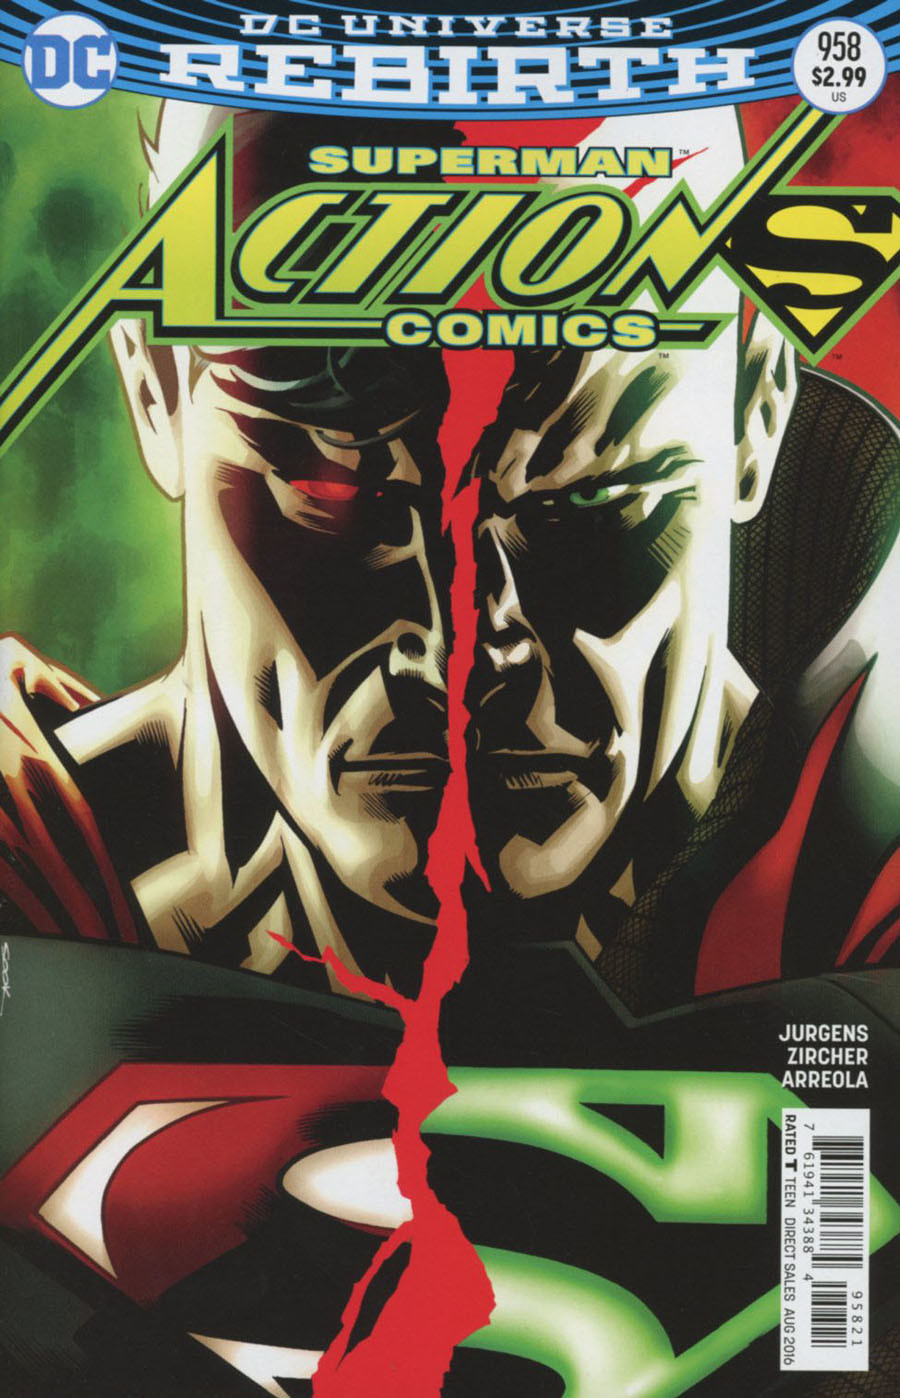 Action Comics Vol. 1 #958